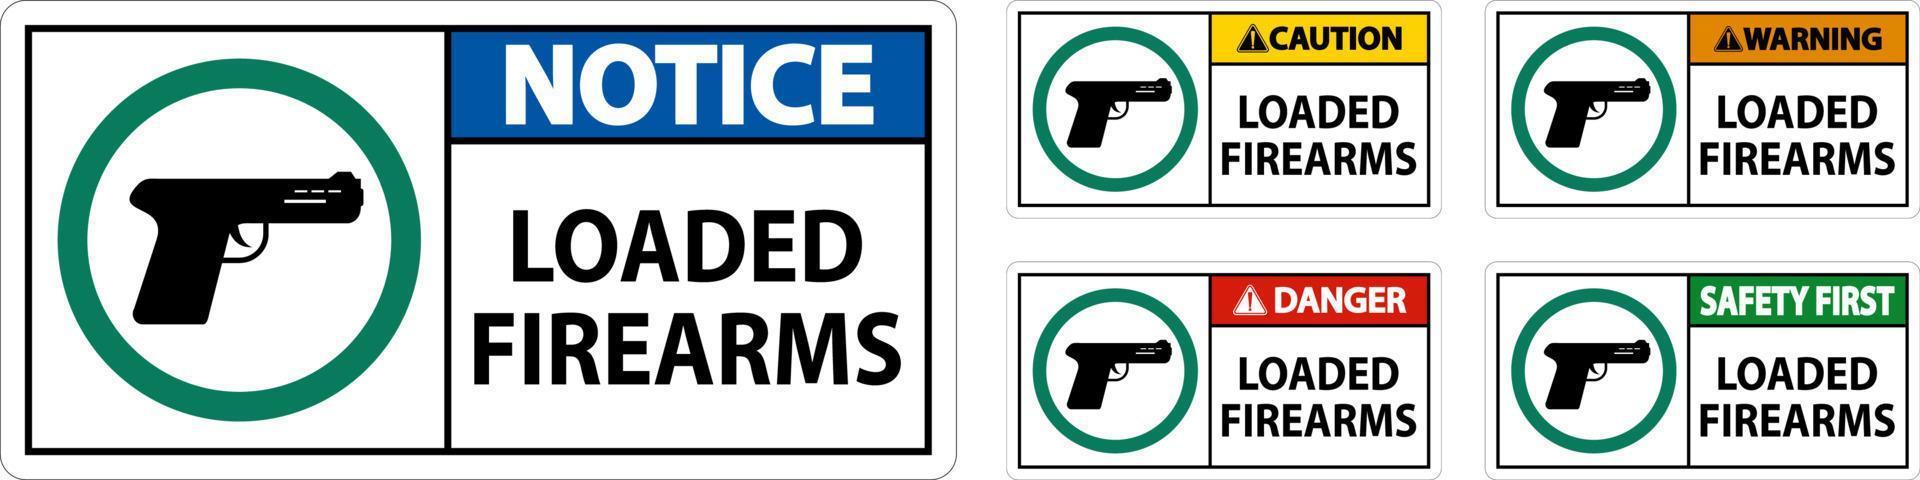 pistola proprietario cartello avvertimento, caricato armi da fuoco vettore